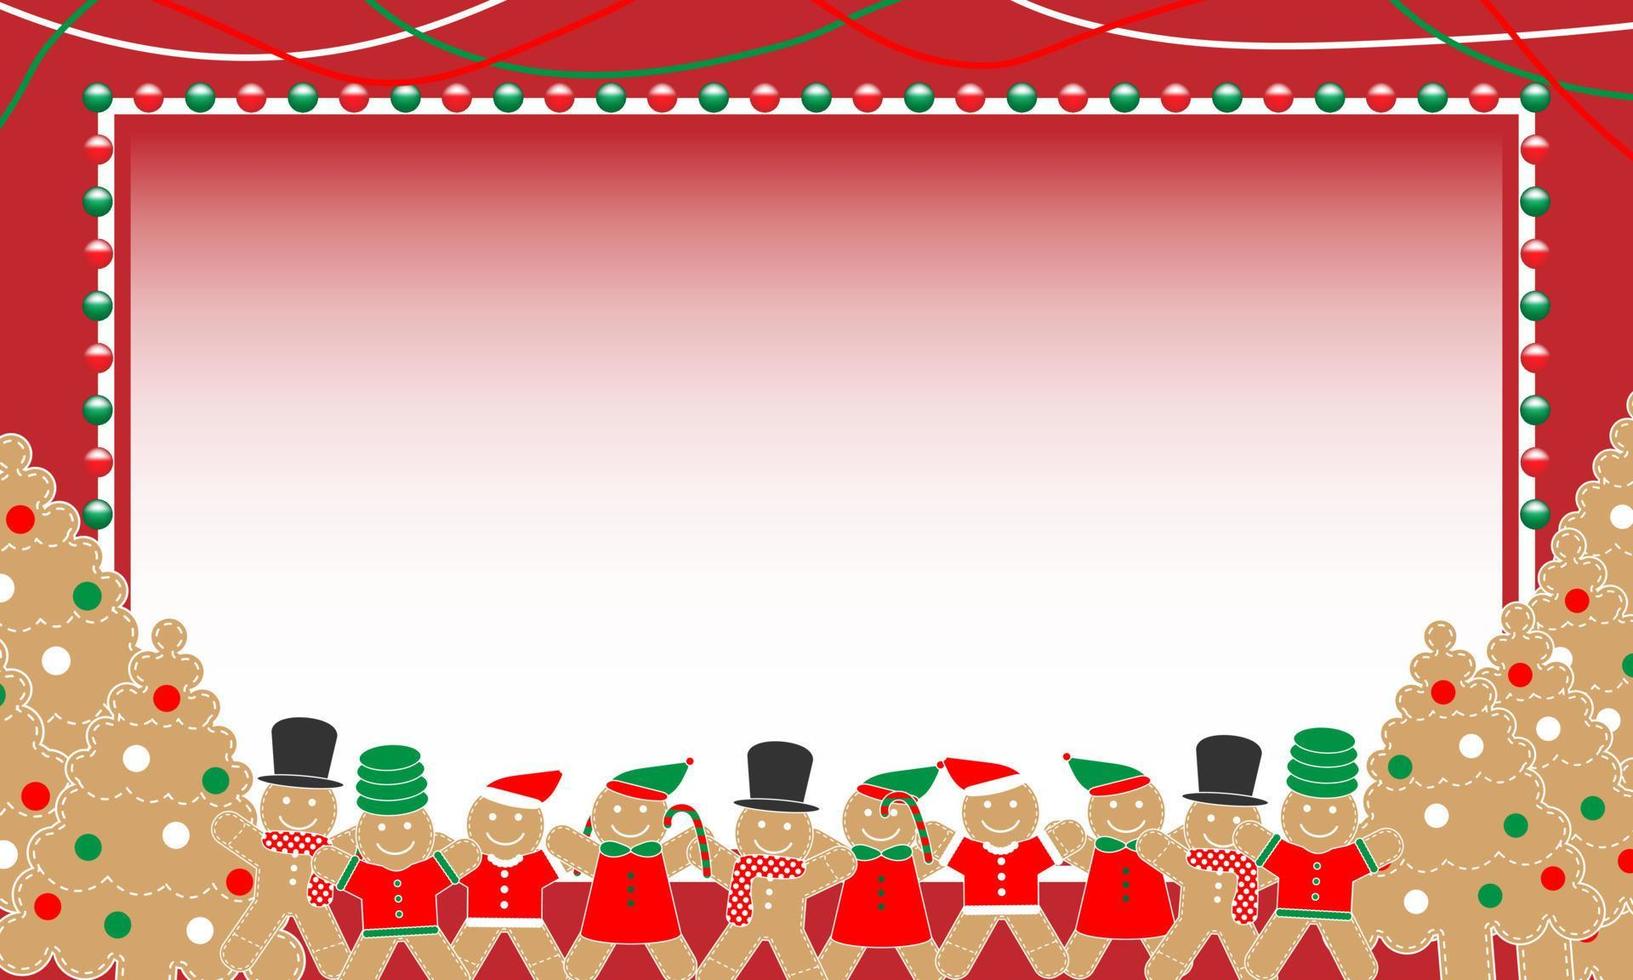 peperkoek Mens en Kerstmis boom koekjes decoraties Aan een rood kader grens achtergrond. Kerstmis poster banier ontwerp voor nieuw jaar dag, kerstmis, winter vakantie, Koken, voedsel. schattig Kerstmis vector